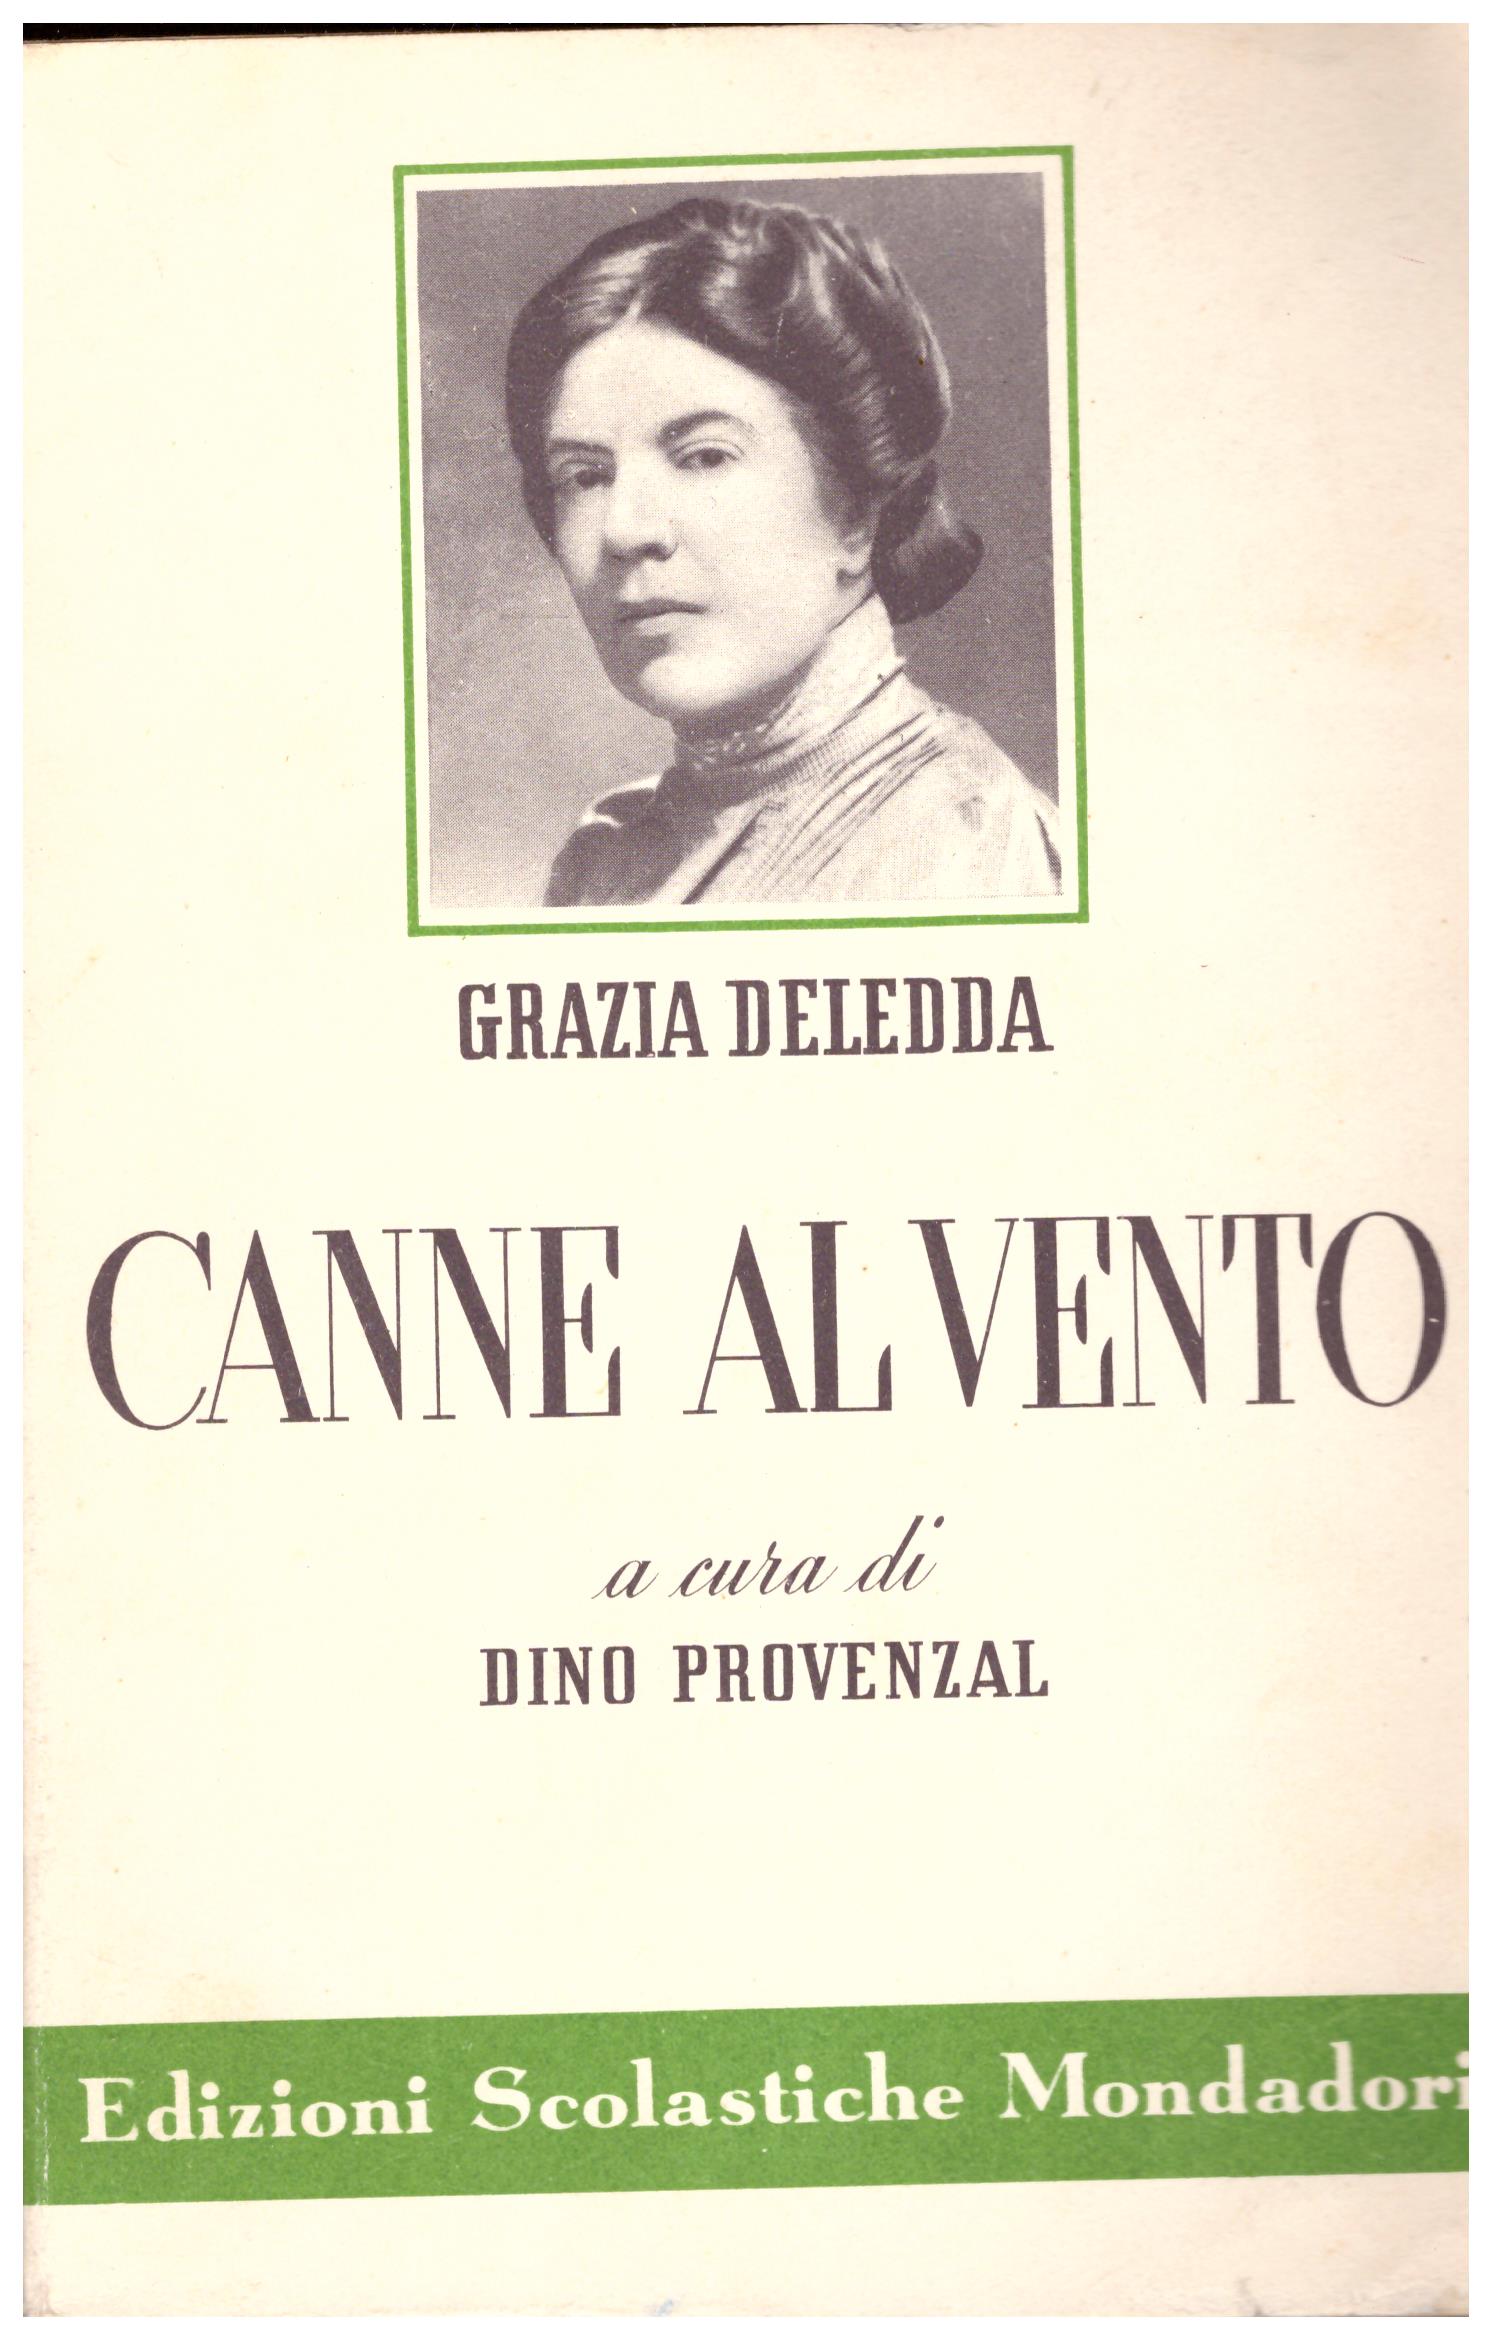 Titolo: Canne al vento  Autore: Grazia Deledda  Editore: edizioni scolastiche Mondadori, 1954